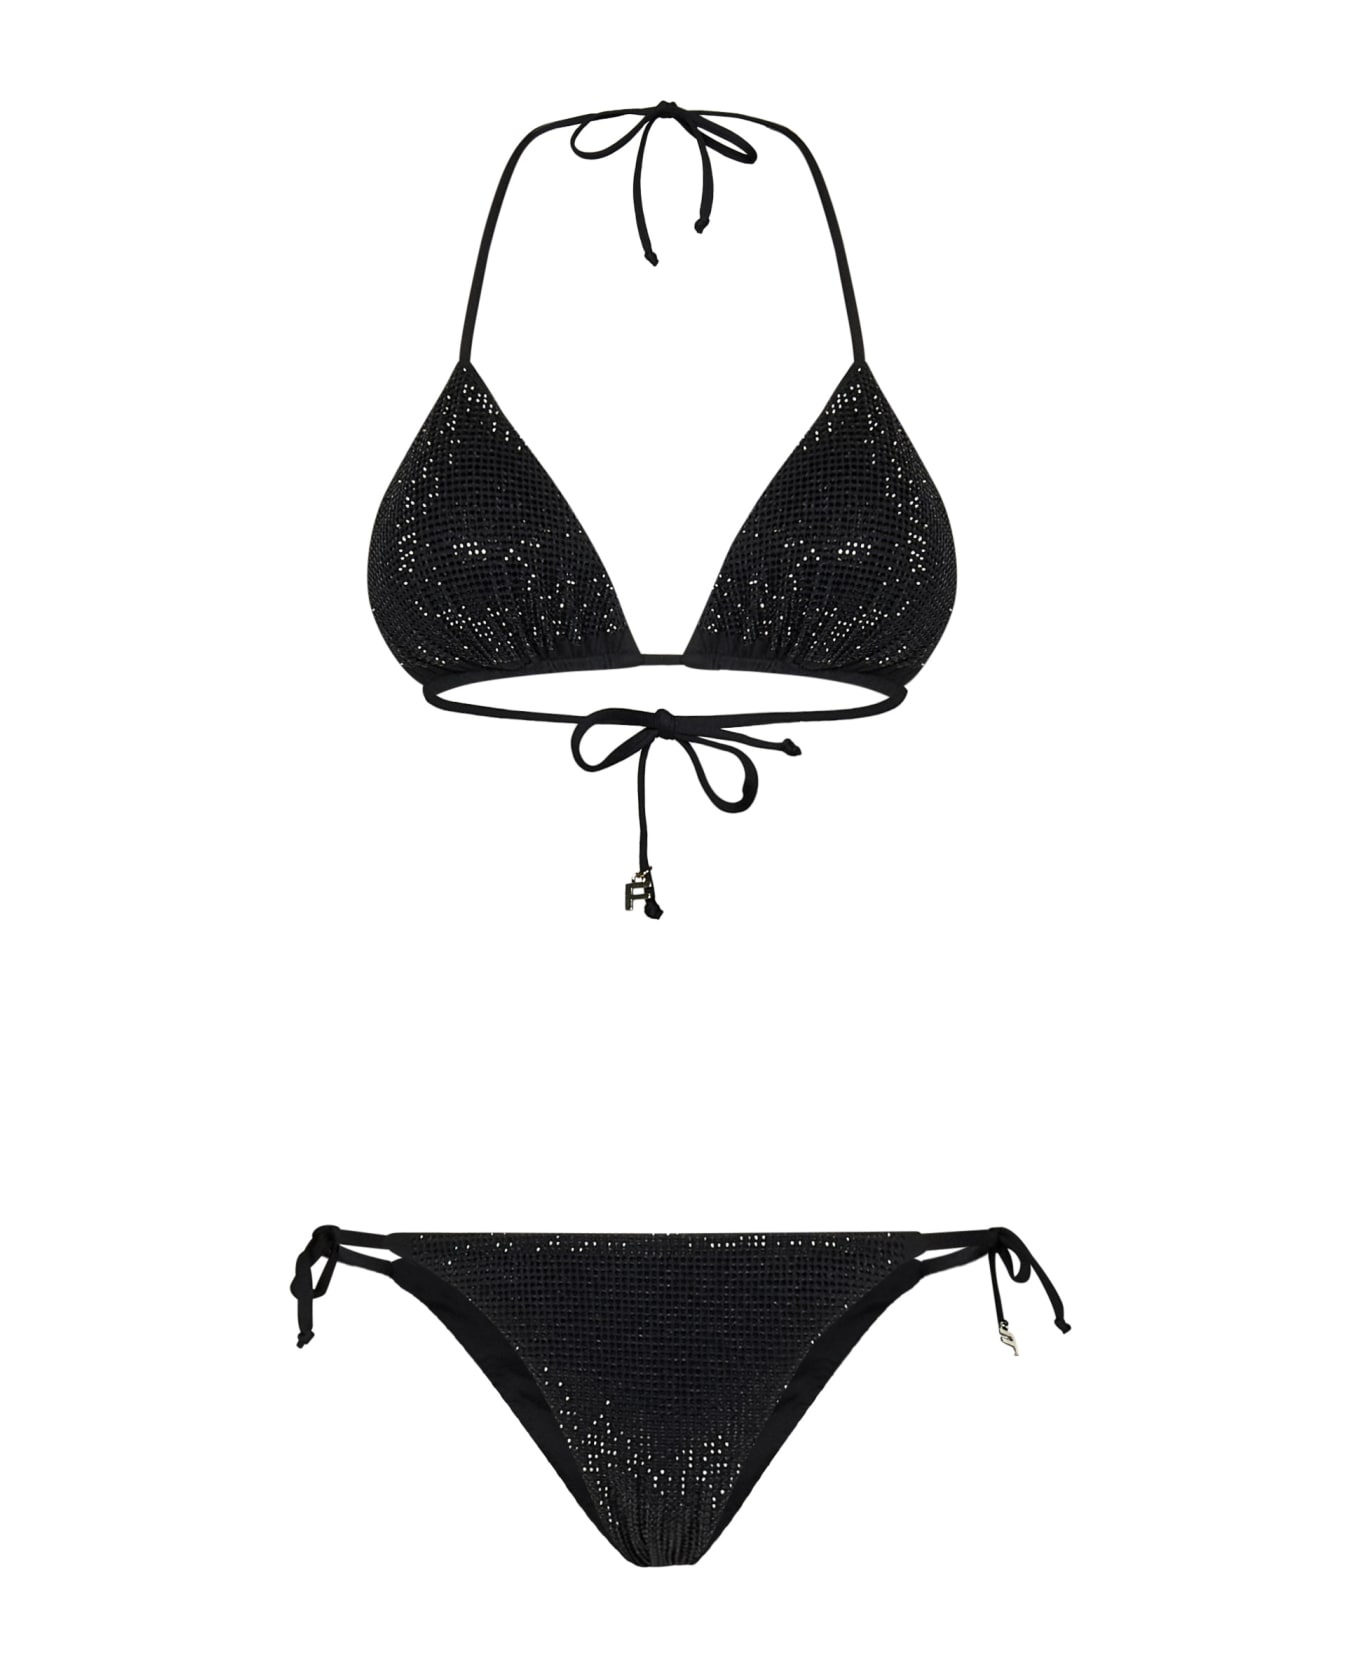 Fisico - Cristina Ferrari Fisico Bikini - Black